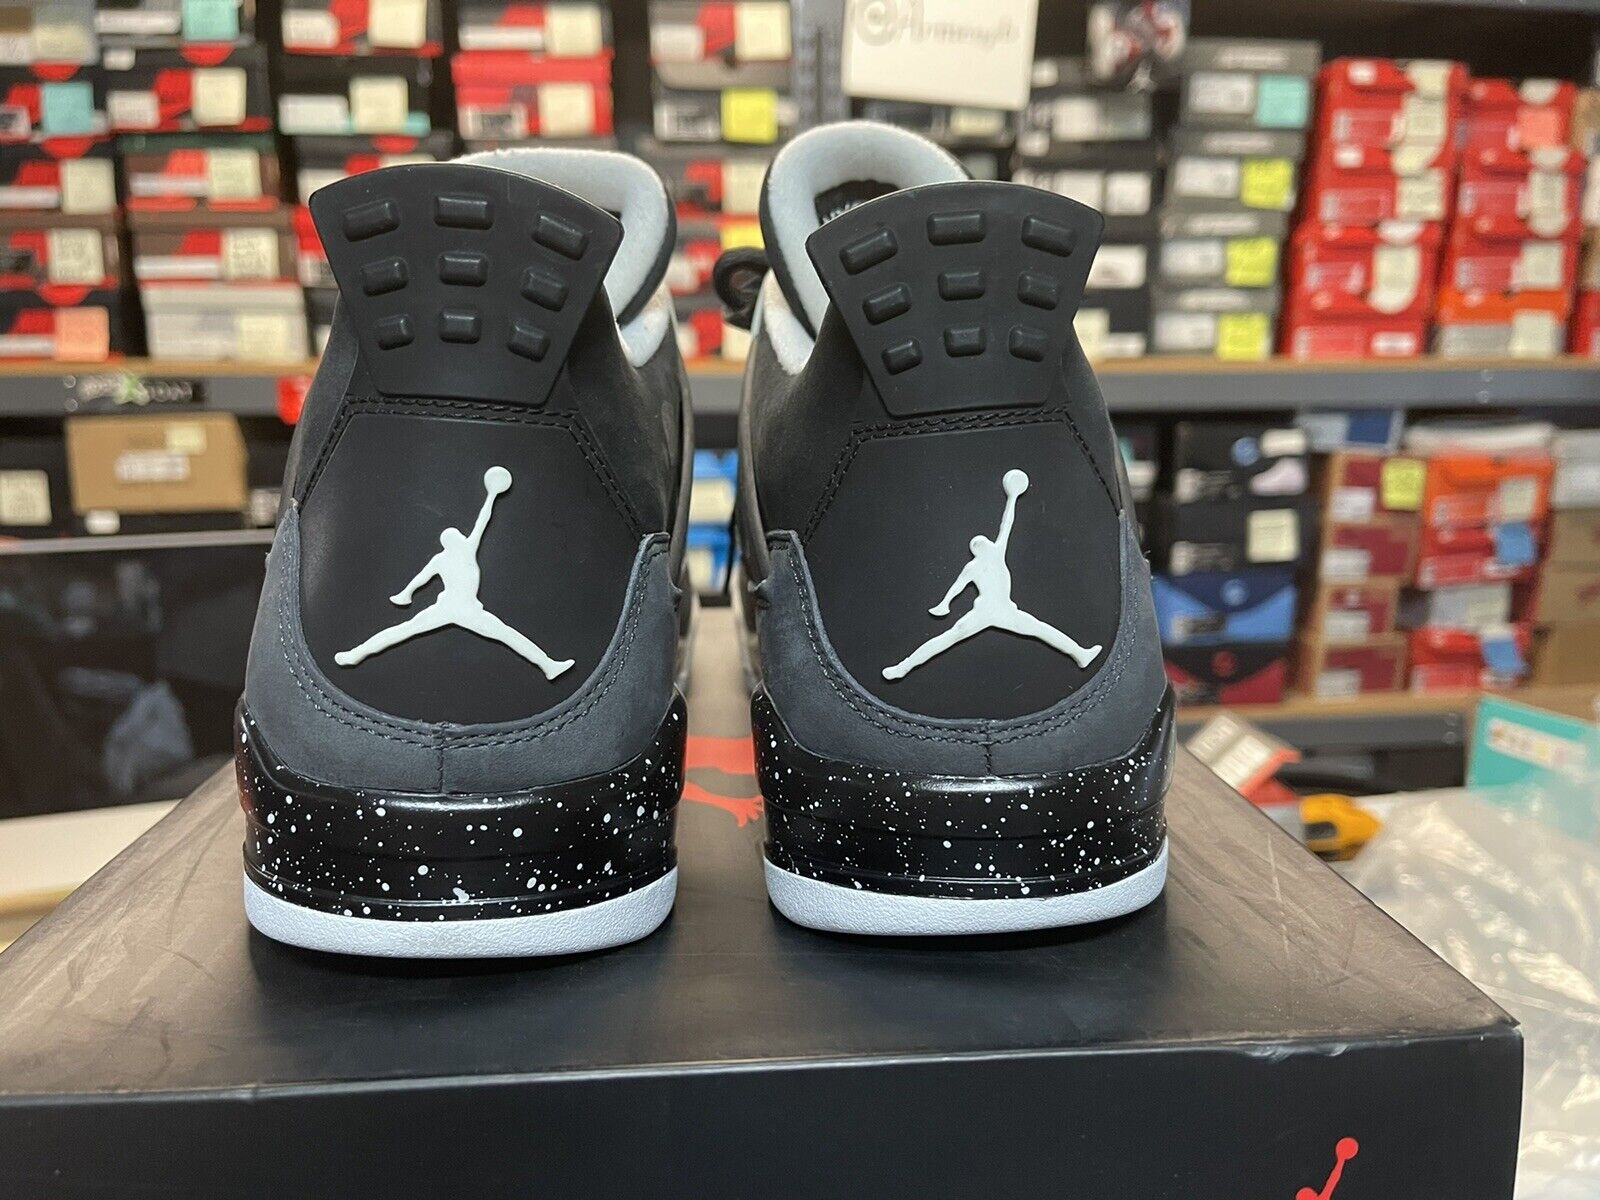 Nike Air Jordan 4 Retro 